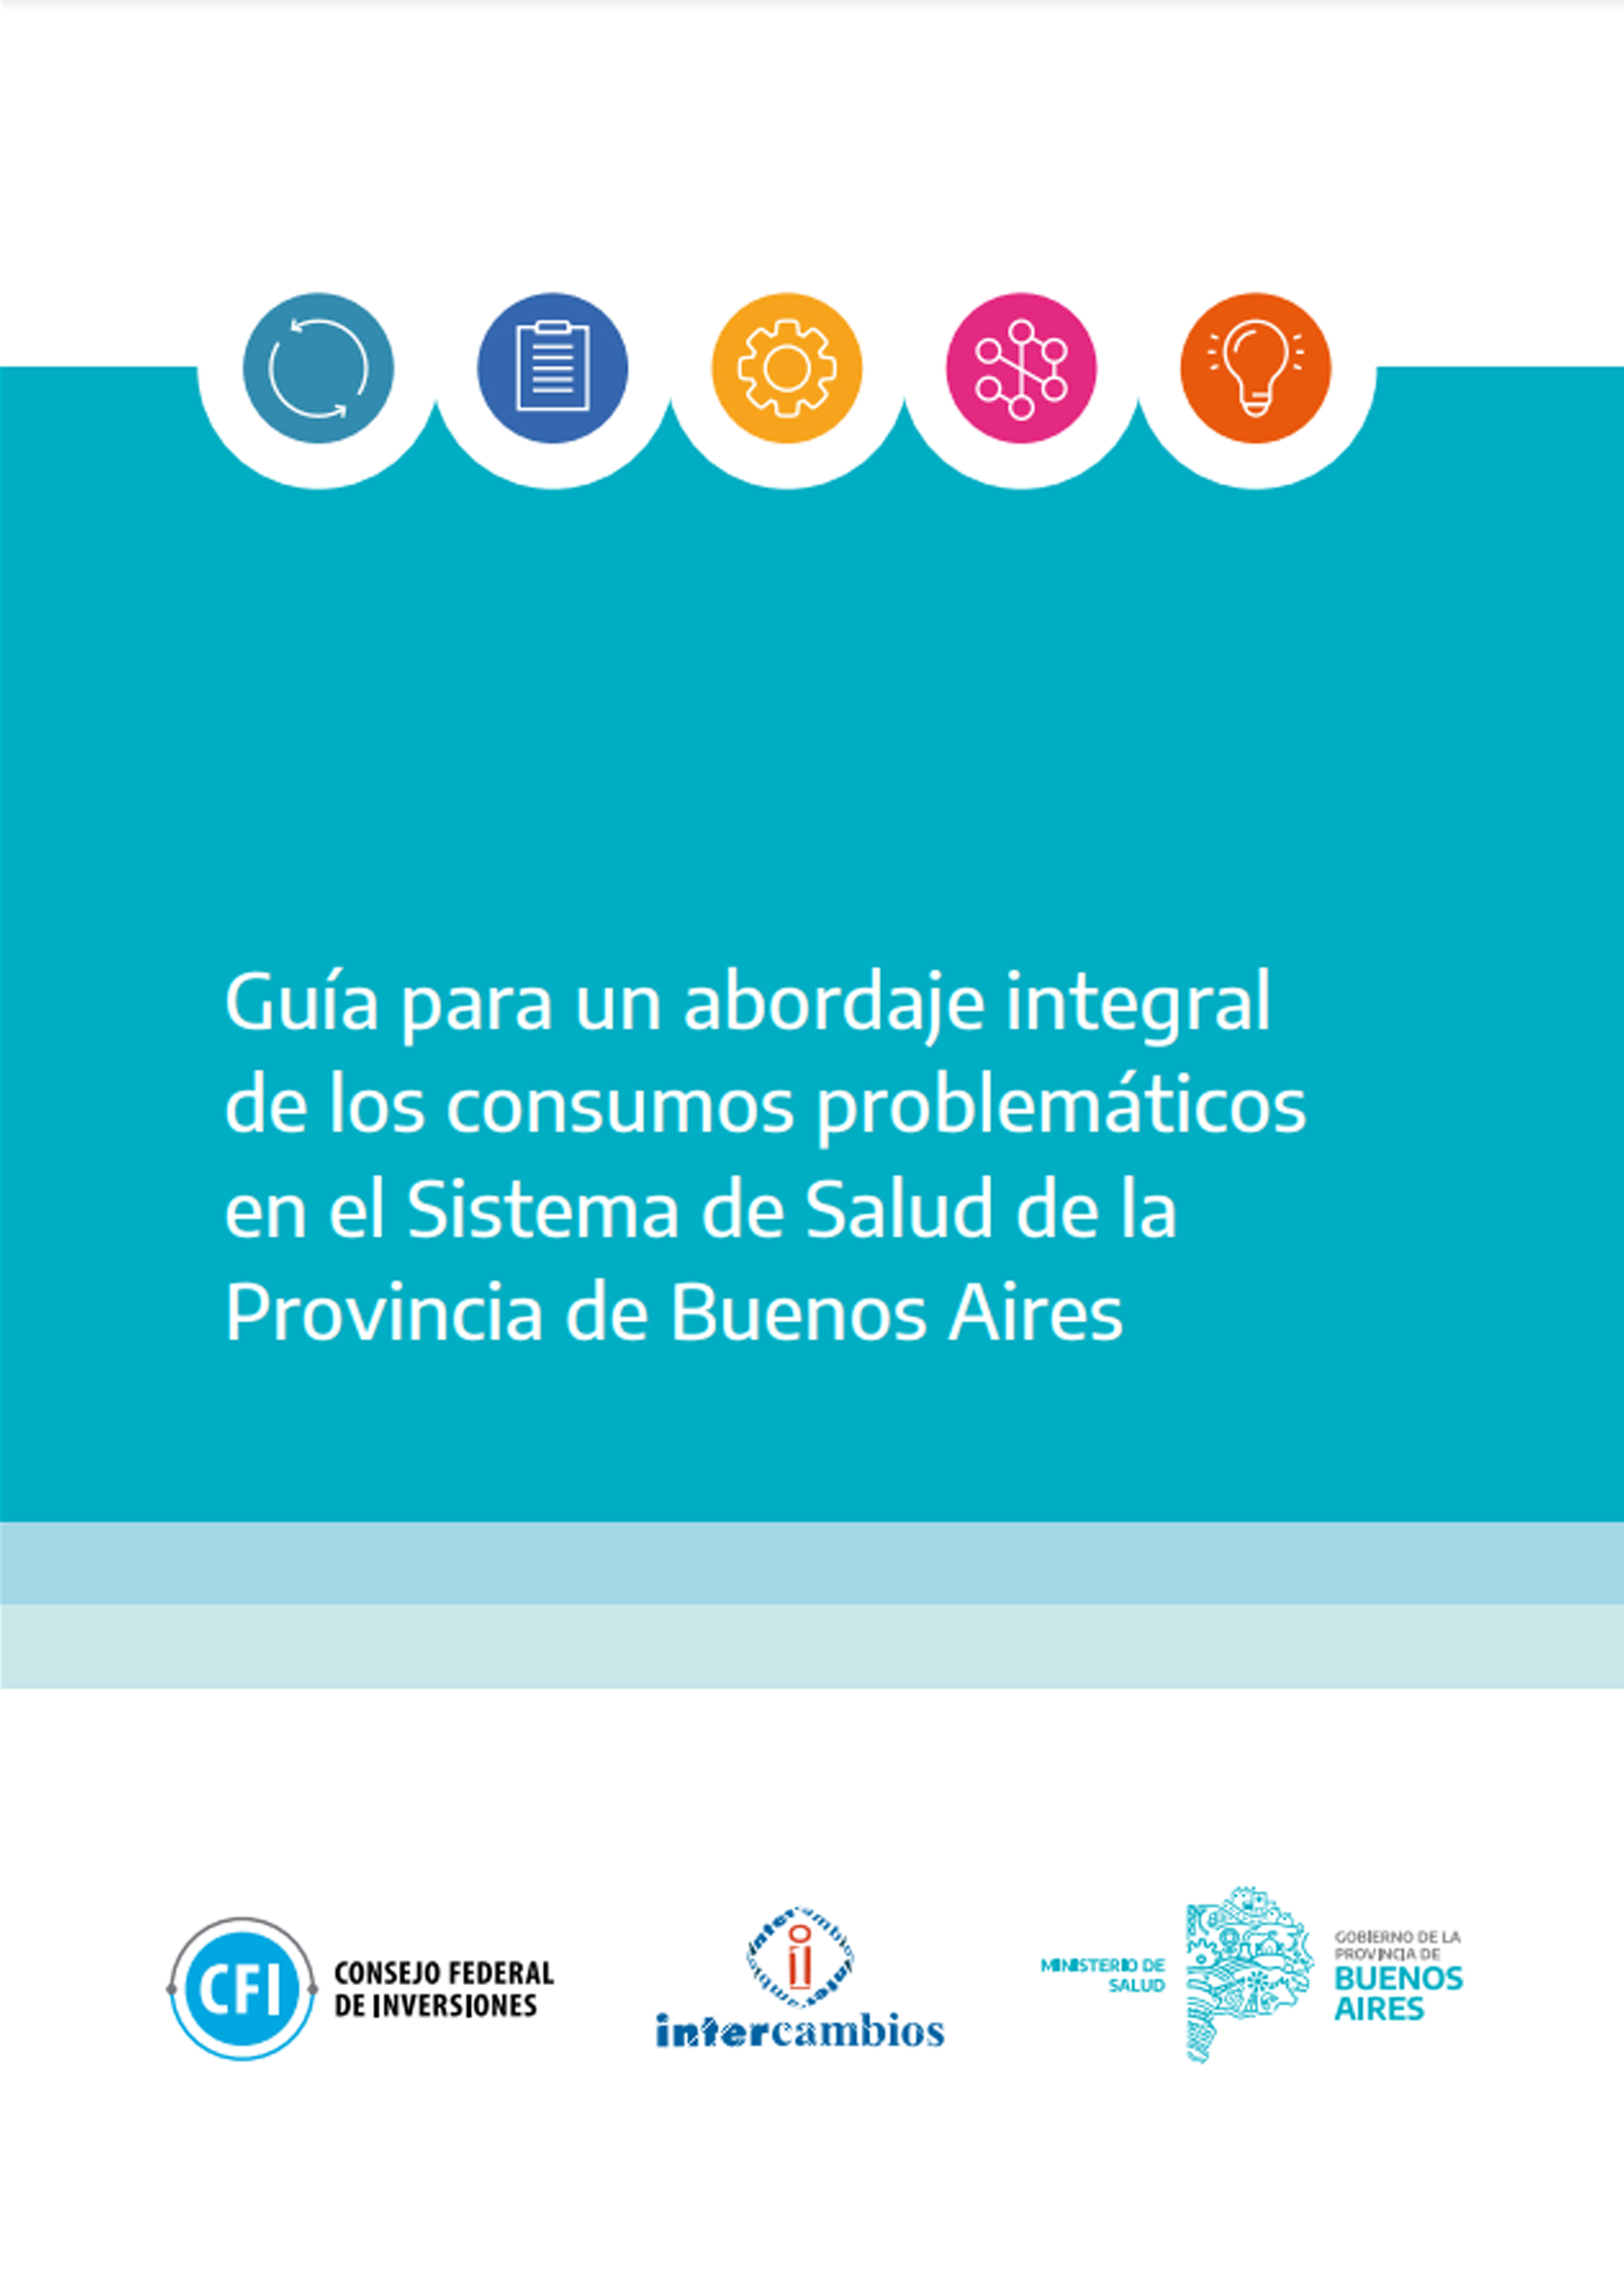 Guía para un abordaje integral de los consumos problemáticos en el Sistema de Salud de la Provincia de Buenos Aires” en: Buenos Aires, Argentina.